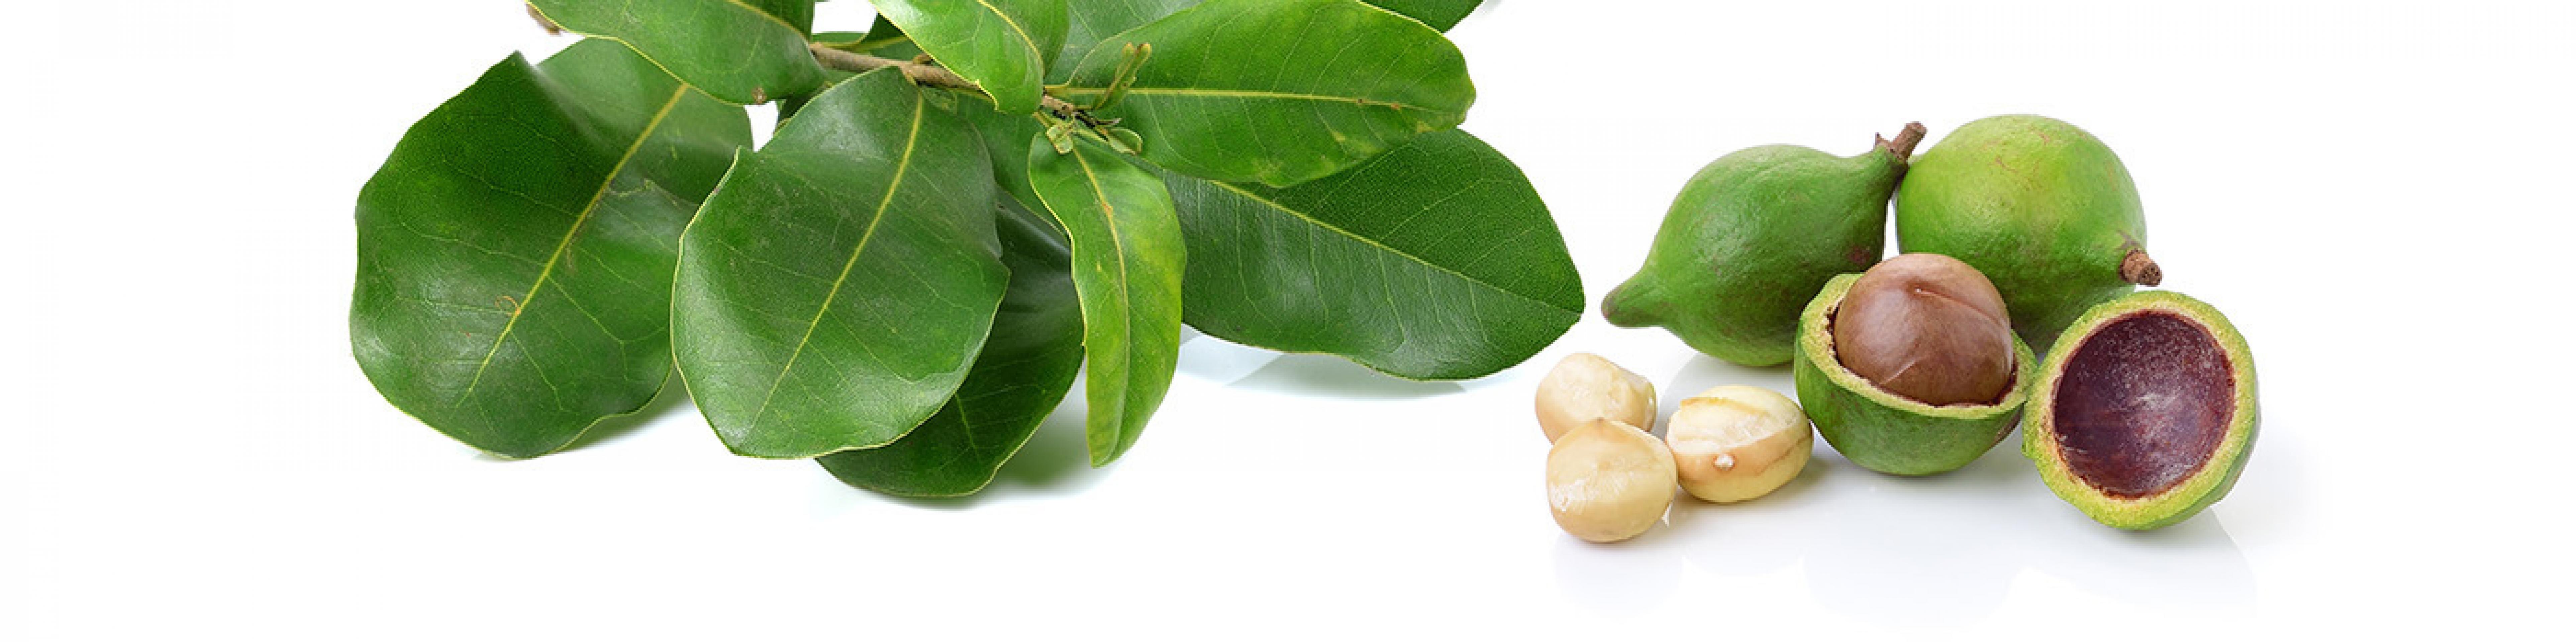 Особенности и полезные свойства ореха макадамия